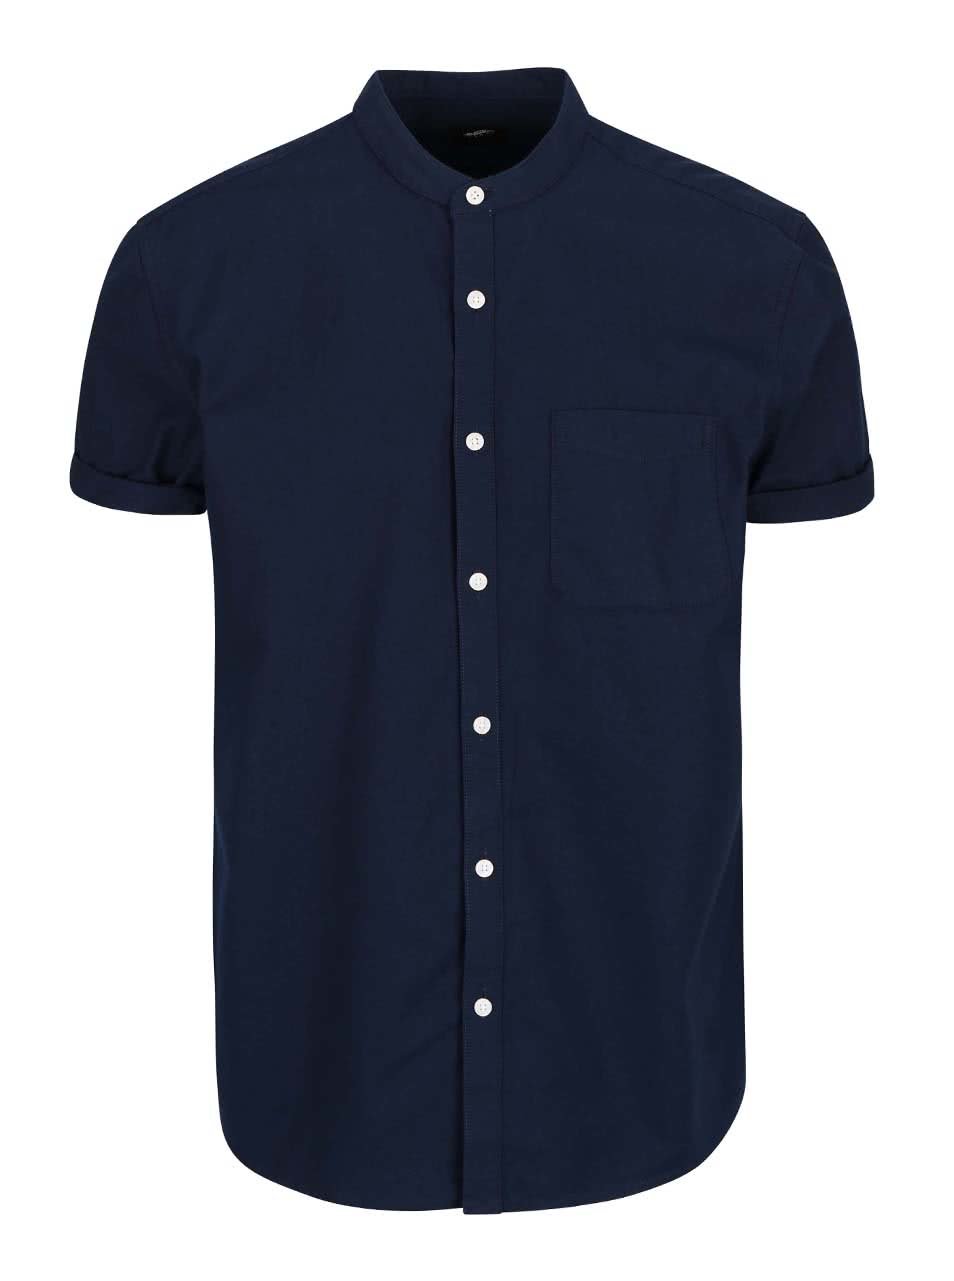 Modrá košile bez límečku Burton Menswear London